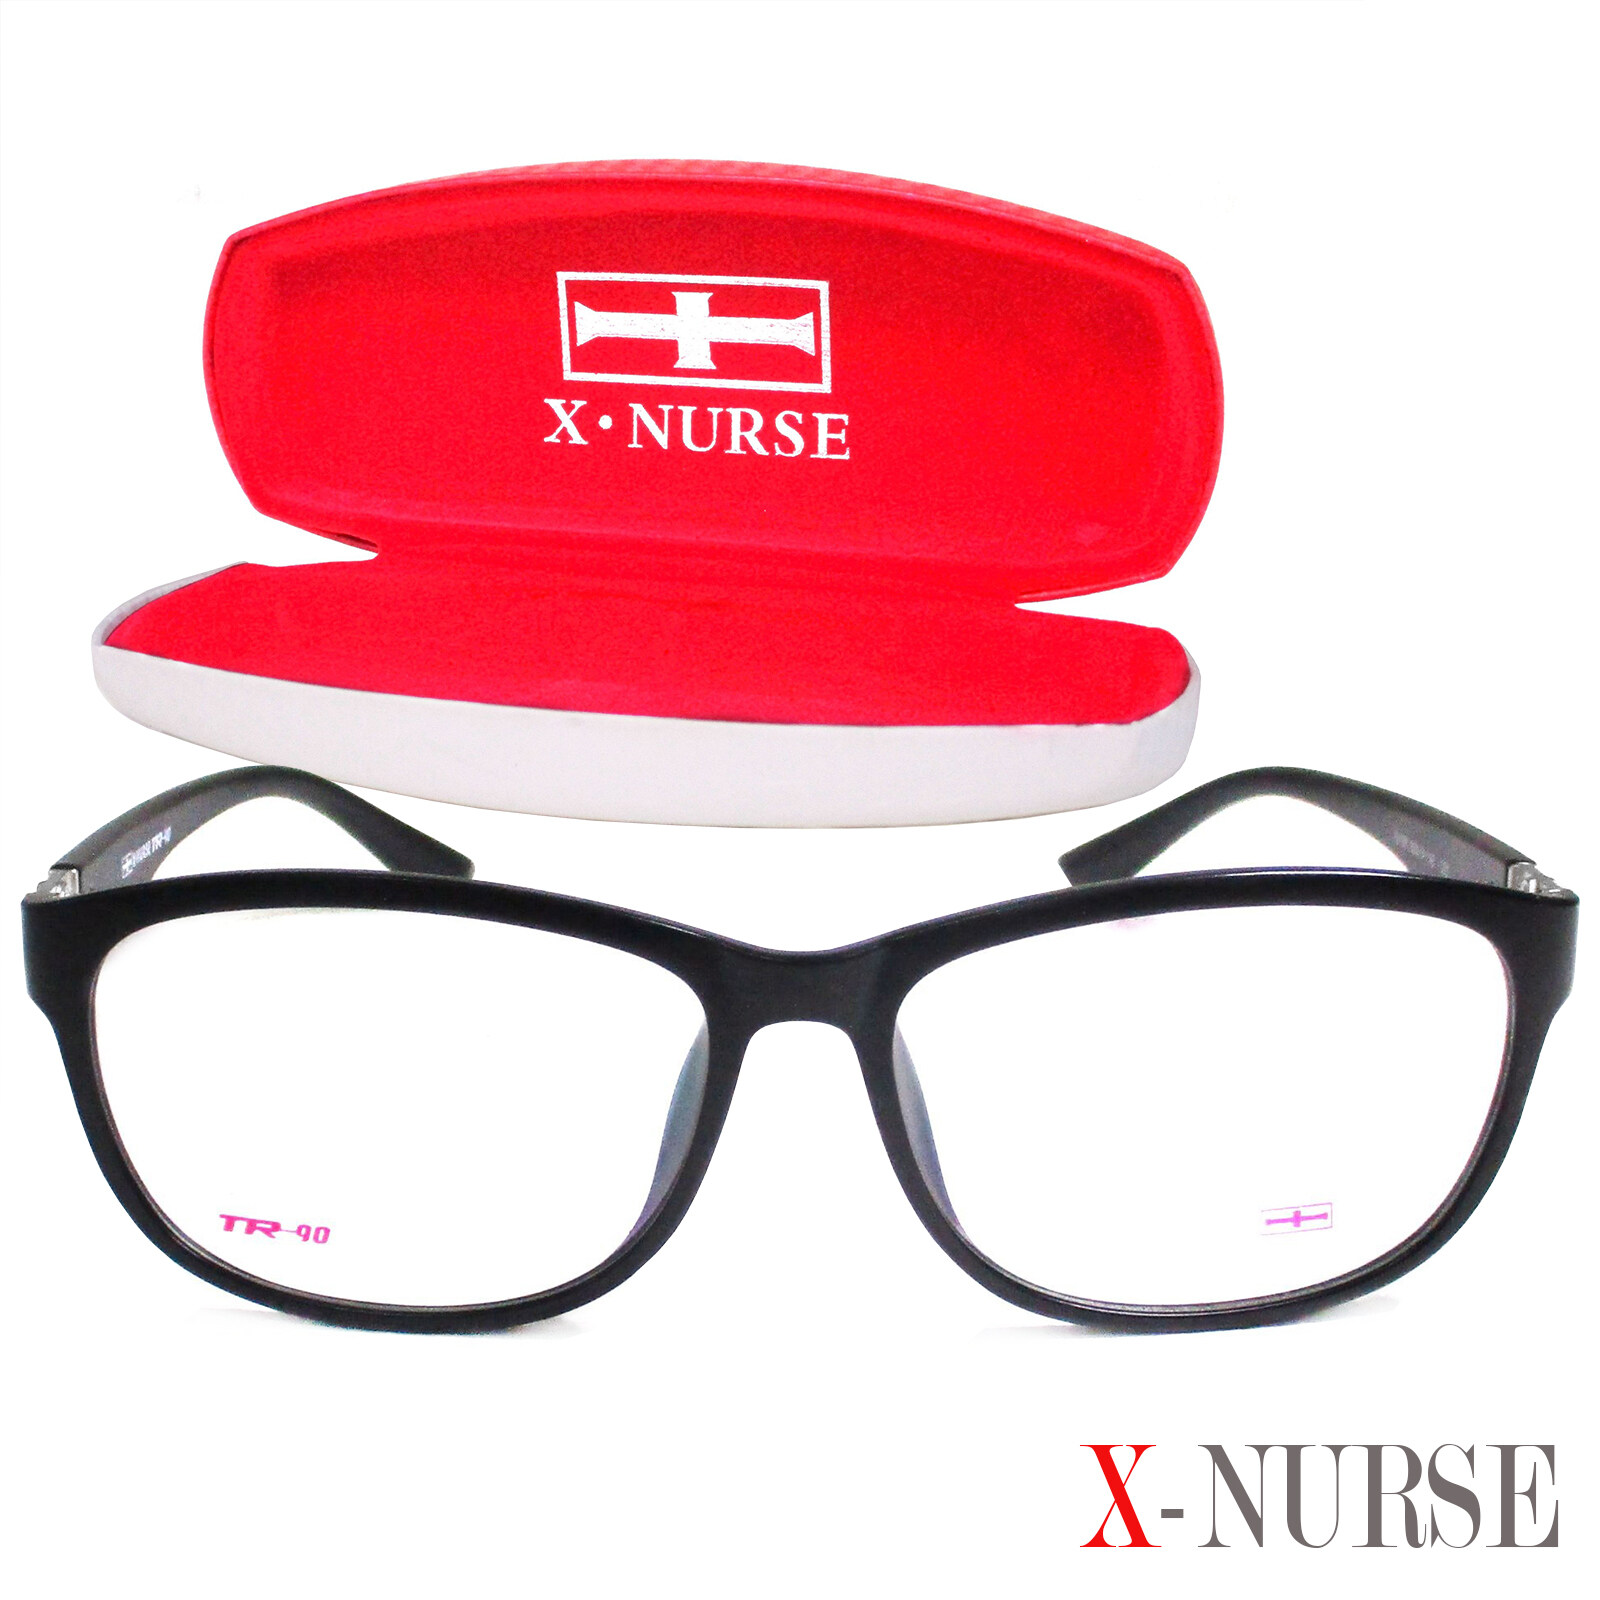 แว่นตาสำหรับตัดเลนส์ กรอบแว่นตา ผู้ชาย ผู้หญิง Fashion รุ่น X-Nurse 5192 ทรงรี ขาข้อต่อ วัสดุ พลาสติก พีซี เกรด เอ รับตัดเลนส์สายตาเลนส์กันแดดทุกชนิด